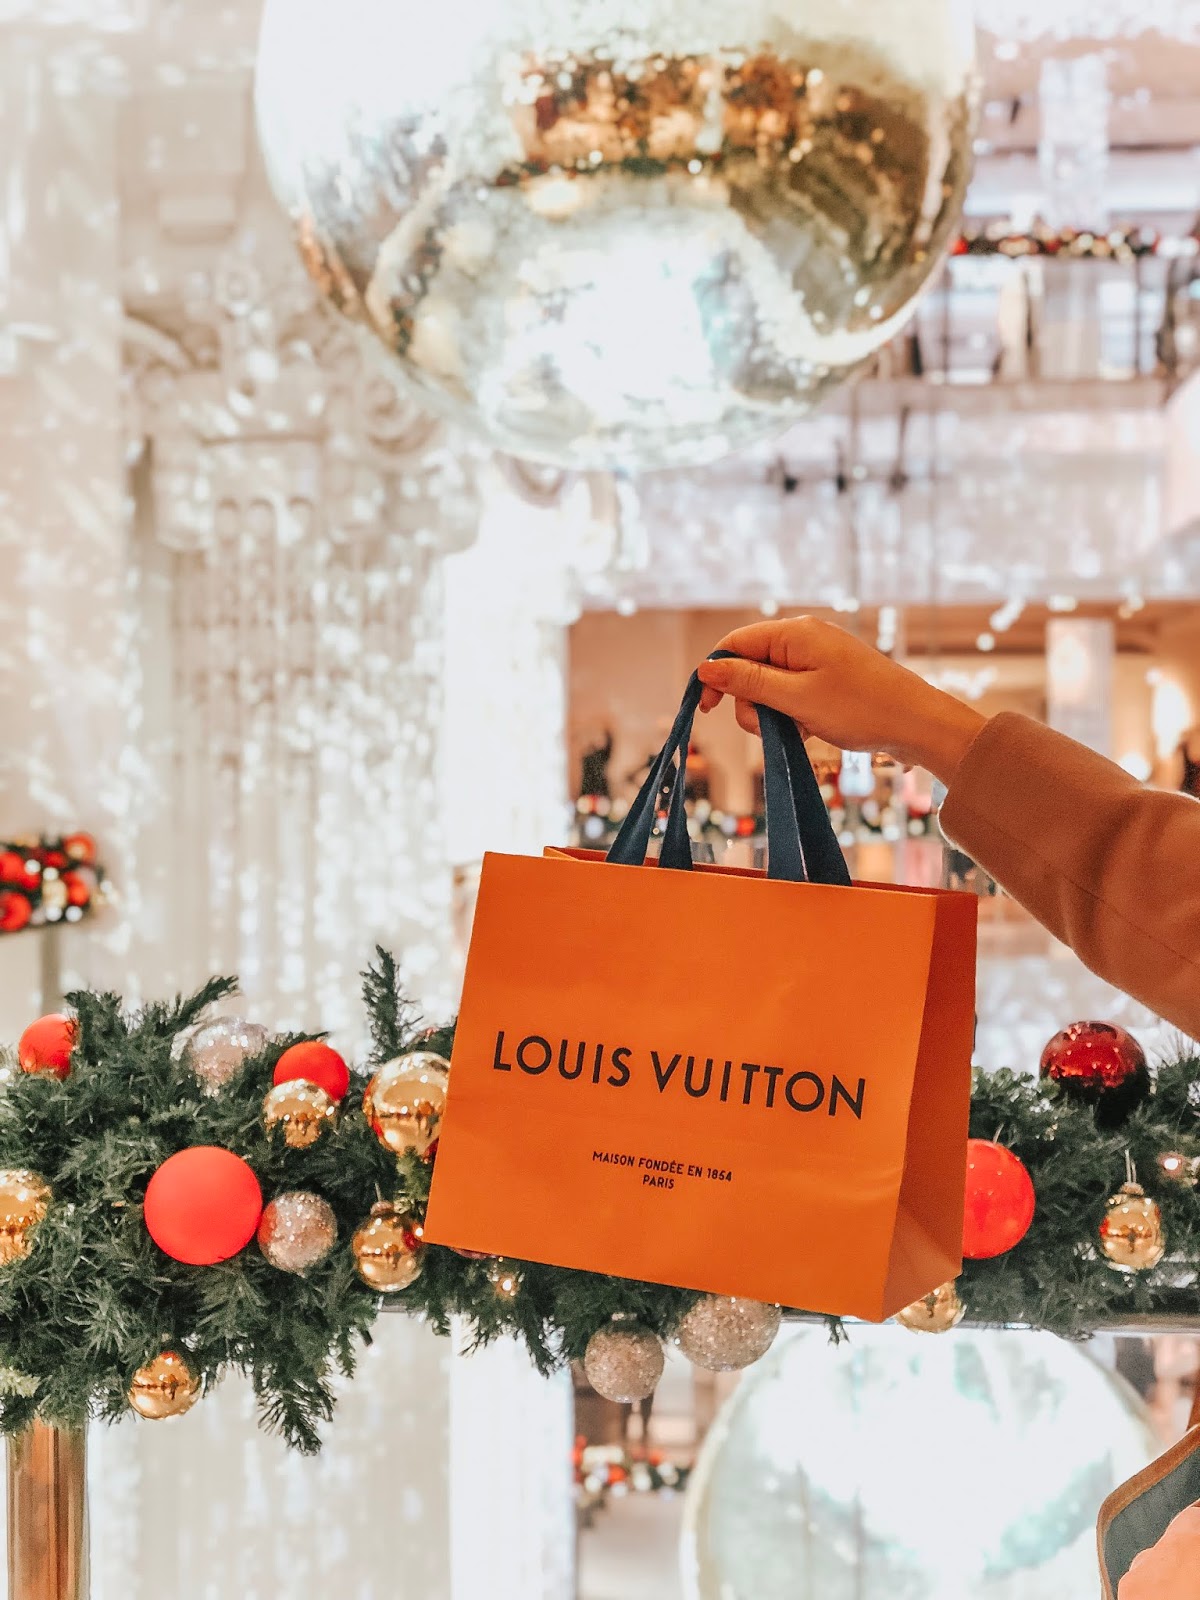 Louis Vuitton Christmas